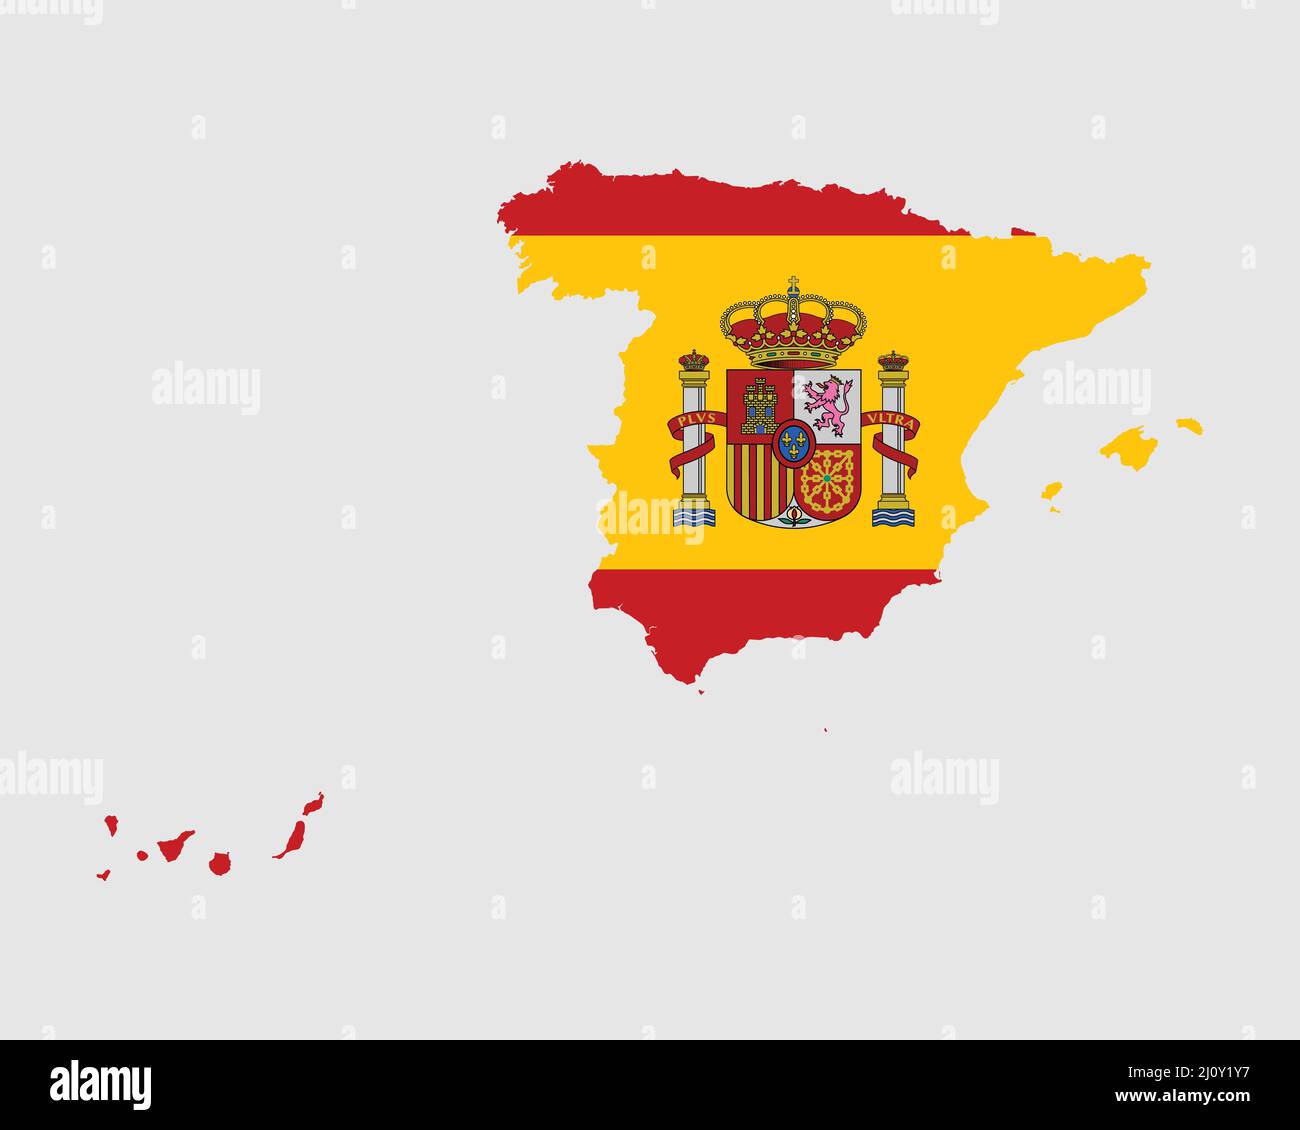 Karte Mit Flagge Spaniens. Karte des Königreichs Spanien mit dem spanischen Länderbanner. Vektorgrafik Stock Vektor